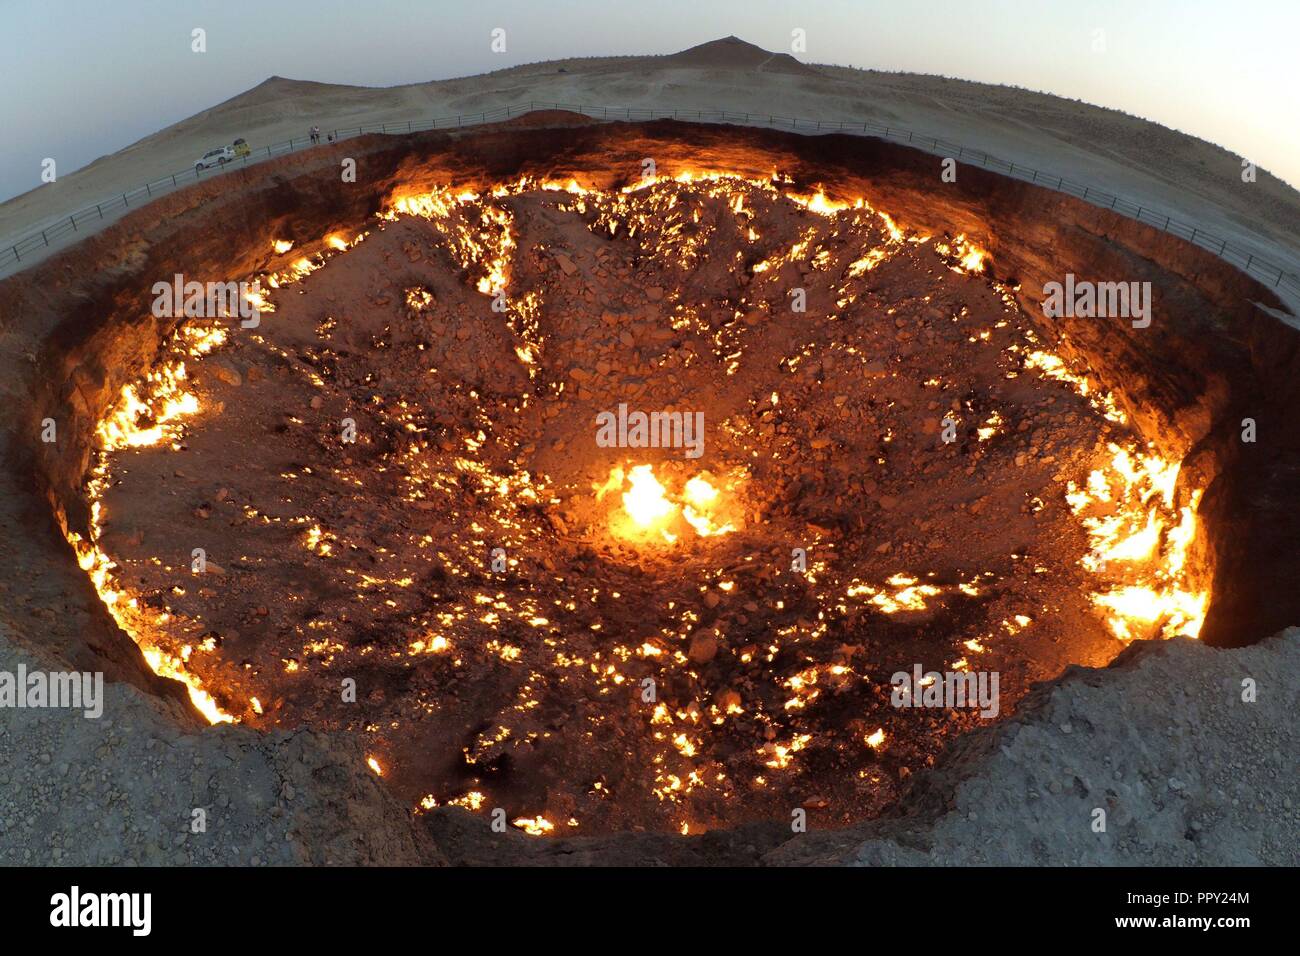 Derweze, Turkmenistan. 28 Sep, 2018. Die darvaza gas Krater, vor Ort als die "Tür zur Hölle" oder "Pforten der Hölle" bekannt, ist ein Erdgasfeld brach in einer unterirdischen Kaverne in Derweze, Turkmenistan. Geologen in Brand gesetzt, um die Verbreitung von Methan zu verhindern, und es wird gedacht, kontinuierlich zu brennen seit 1971. Der Durchmesser der Krater ist 69 Meter (226 ft), und die Tiefe 30 Meter (98 ft). Der Krater ist eine beliebte Touristenattraktion. Seit 2009, 50.000 Touristen haben die Website besucht. Credit: SIPA Asien/ZUMA Draht/Alamy leben Nachrichten Stockfoto